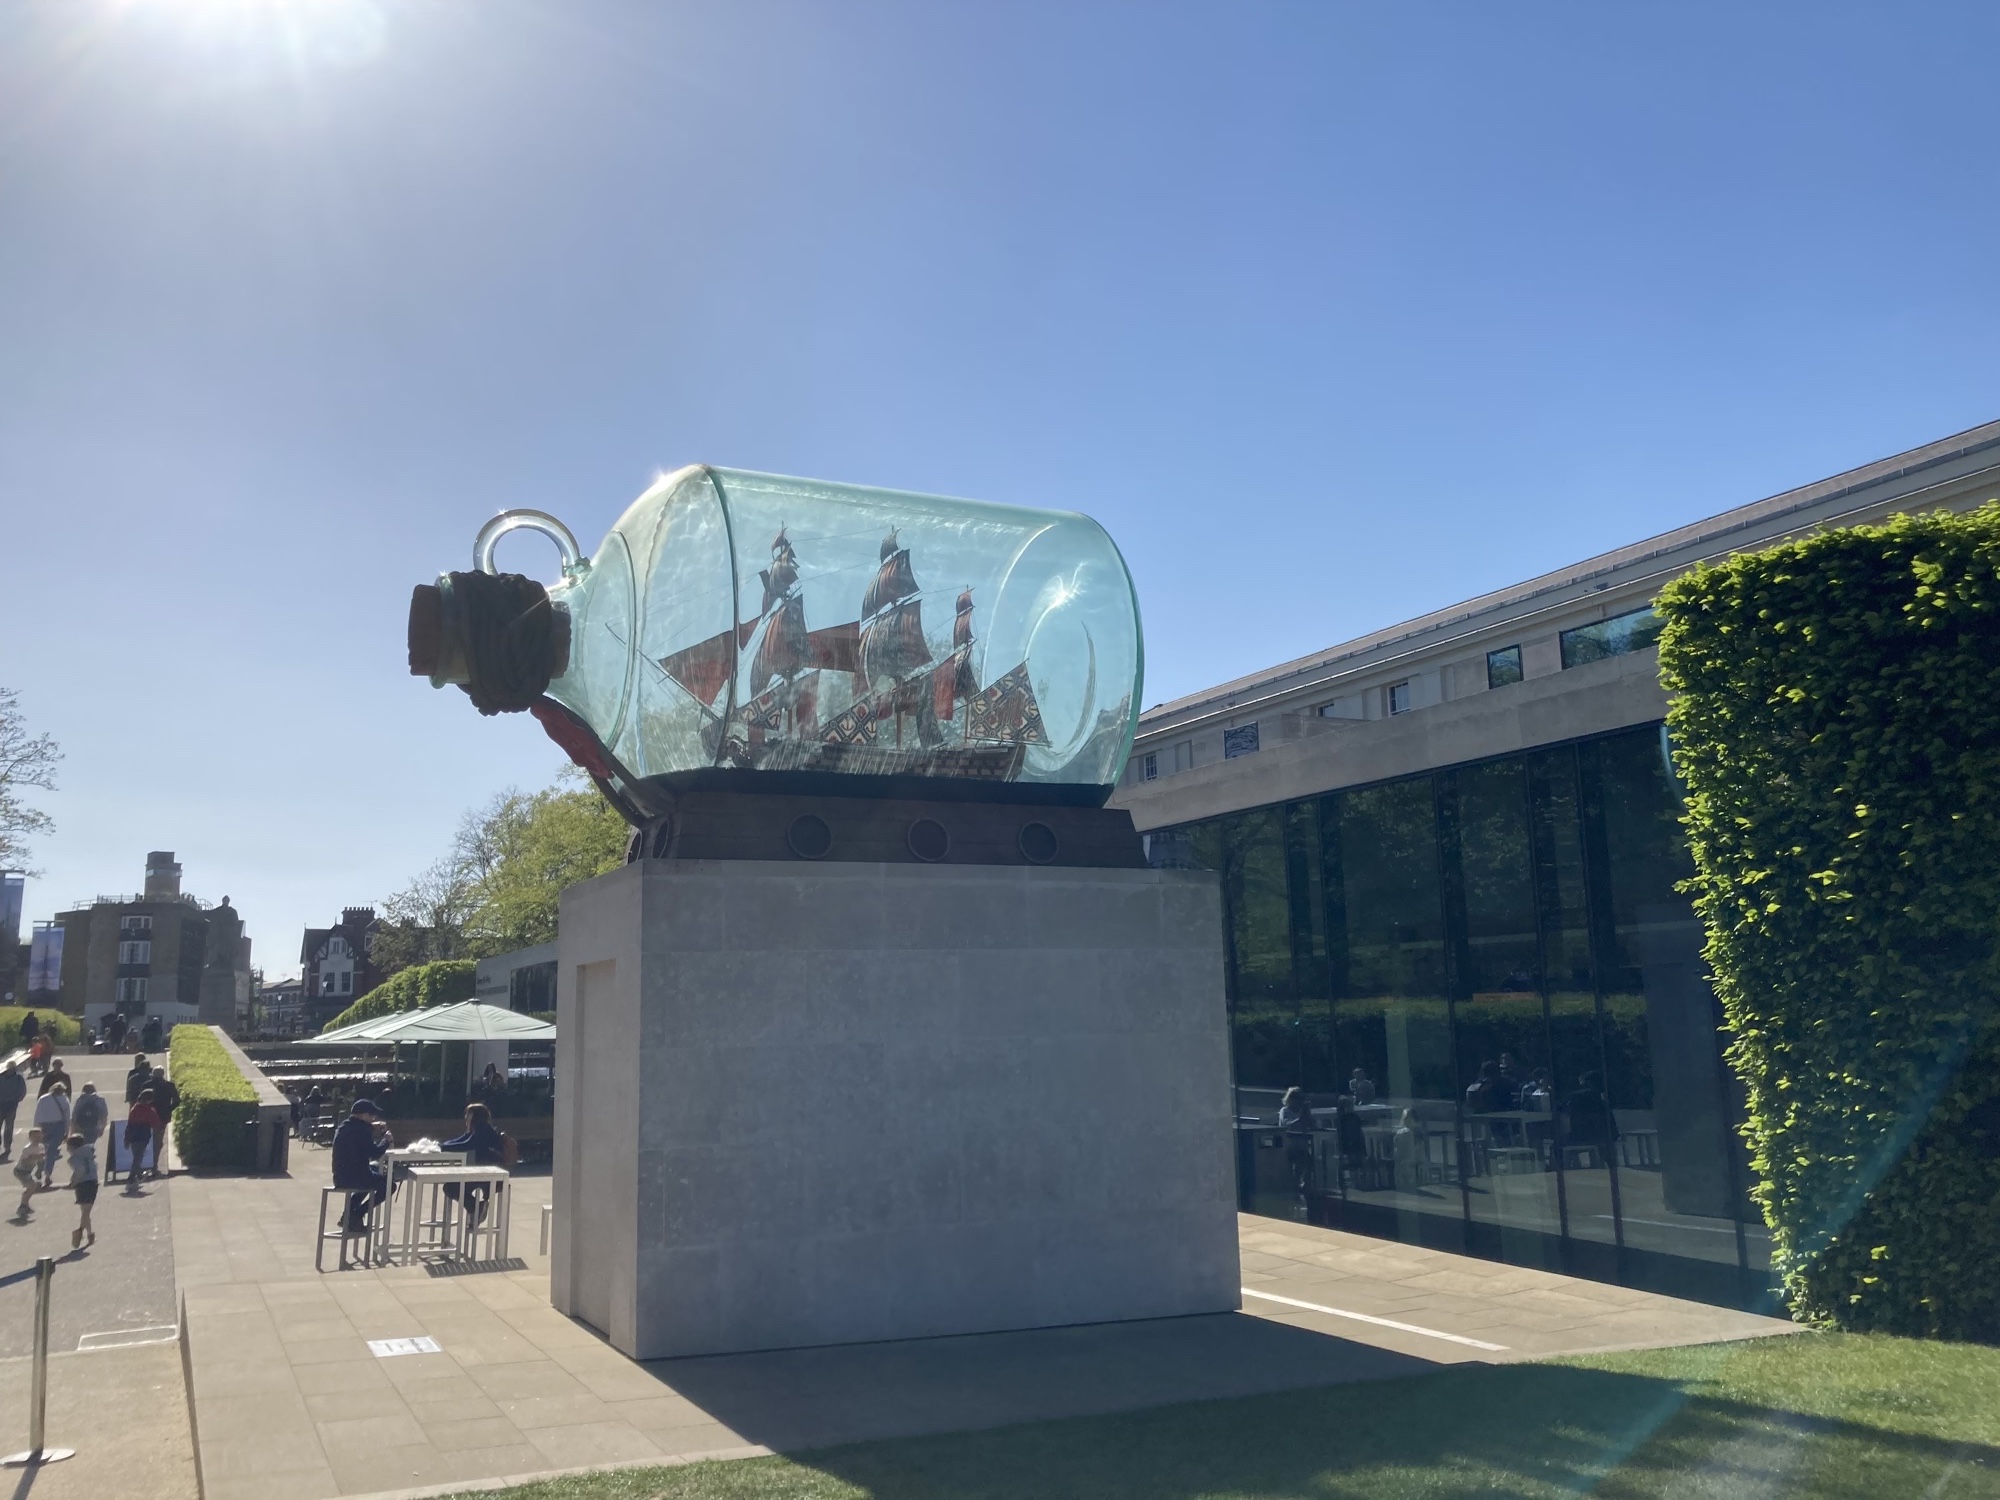 überdimensionales Schiff in einer Glasflasche vor dem südlichen Eingang des National Maritime Museums, die Flasche glänzt im strahlenden Sonnenschein